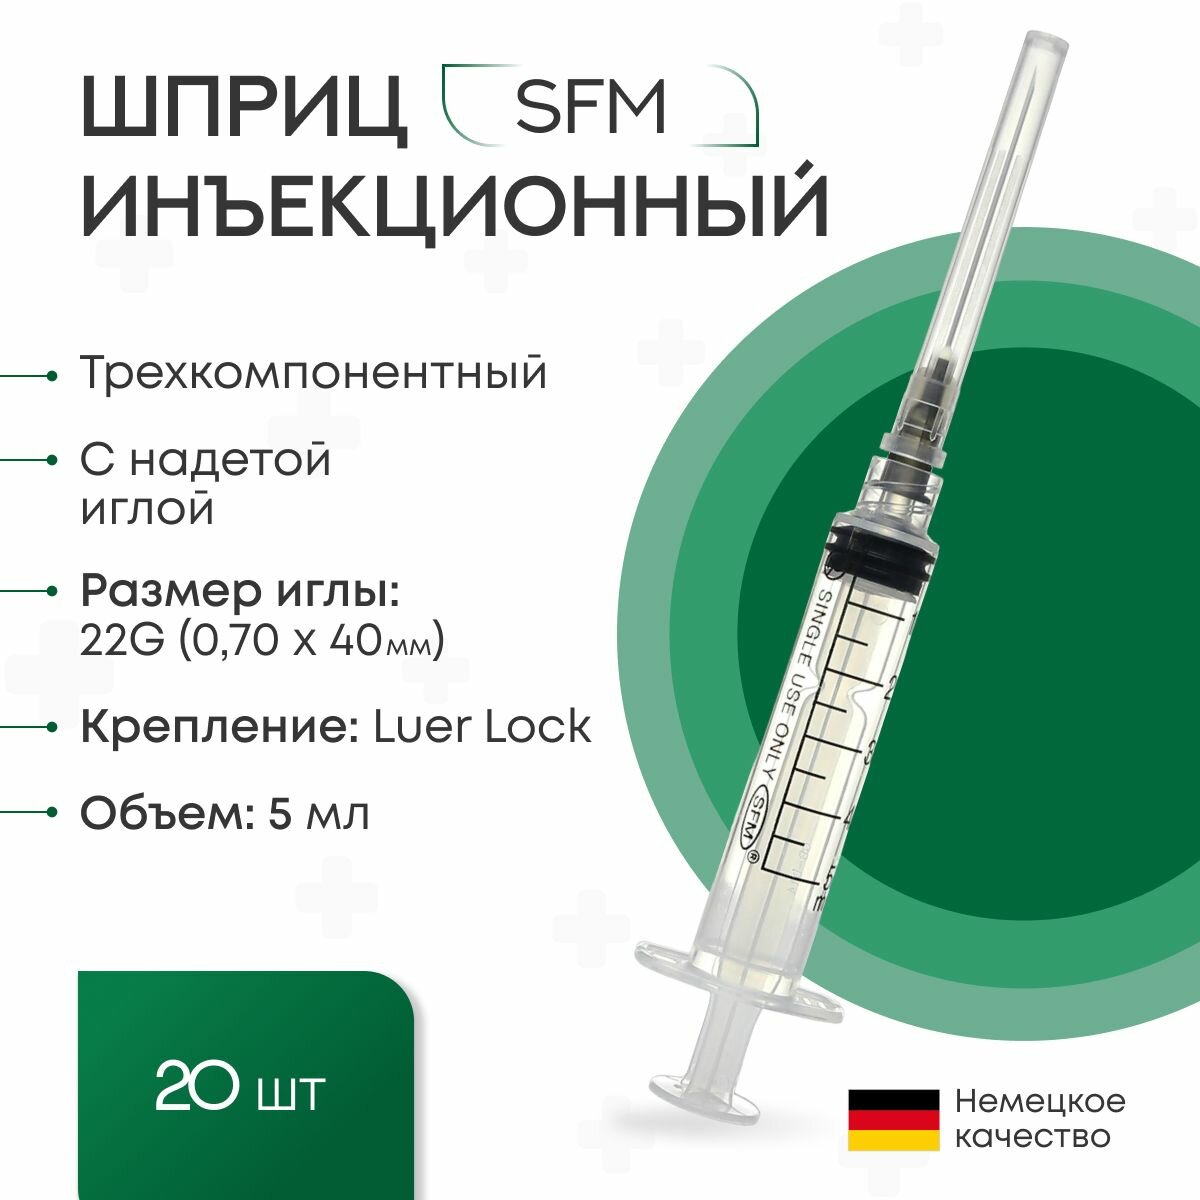 Шприц 5 мл. (3-х) SFM Германия одноразовый стерилизованный с надетой иглой 070 х 40 - 22G (блистер) 20 шт.